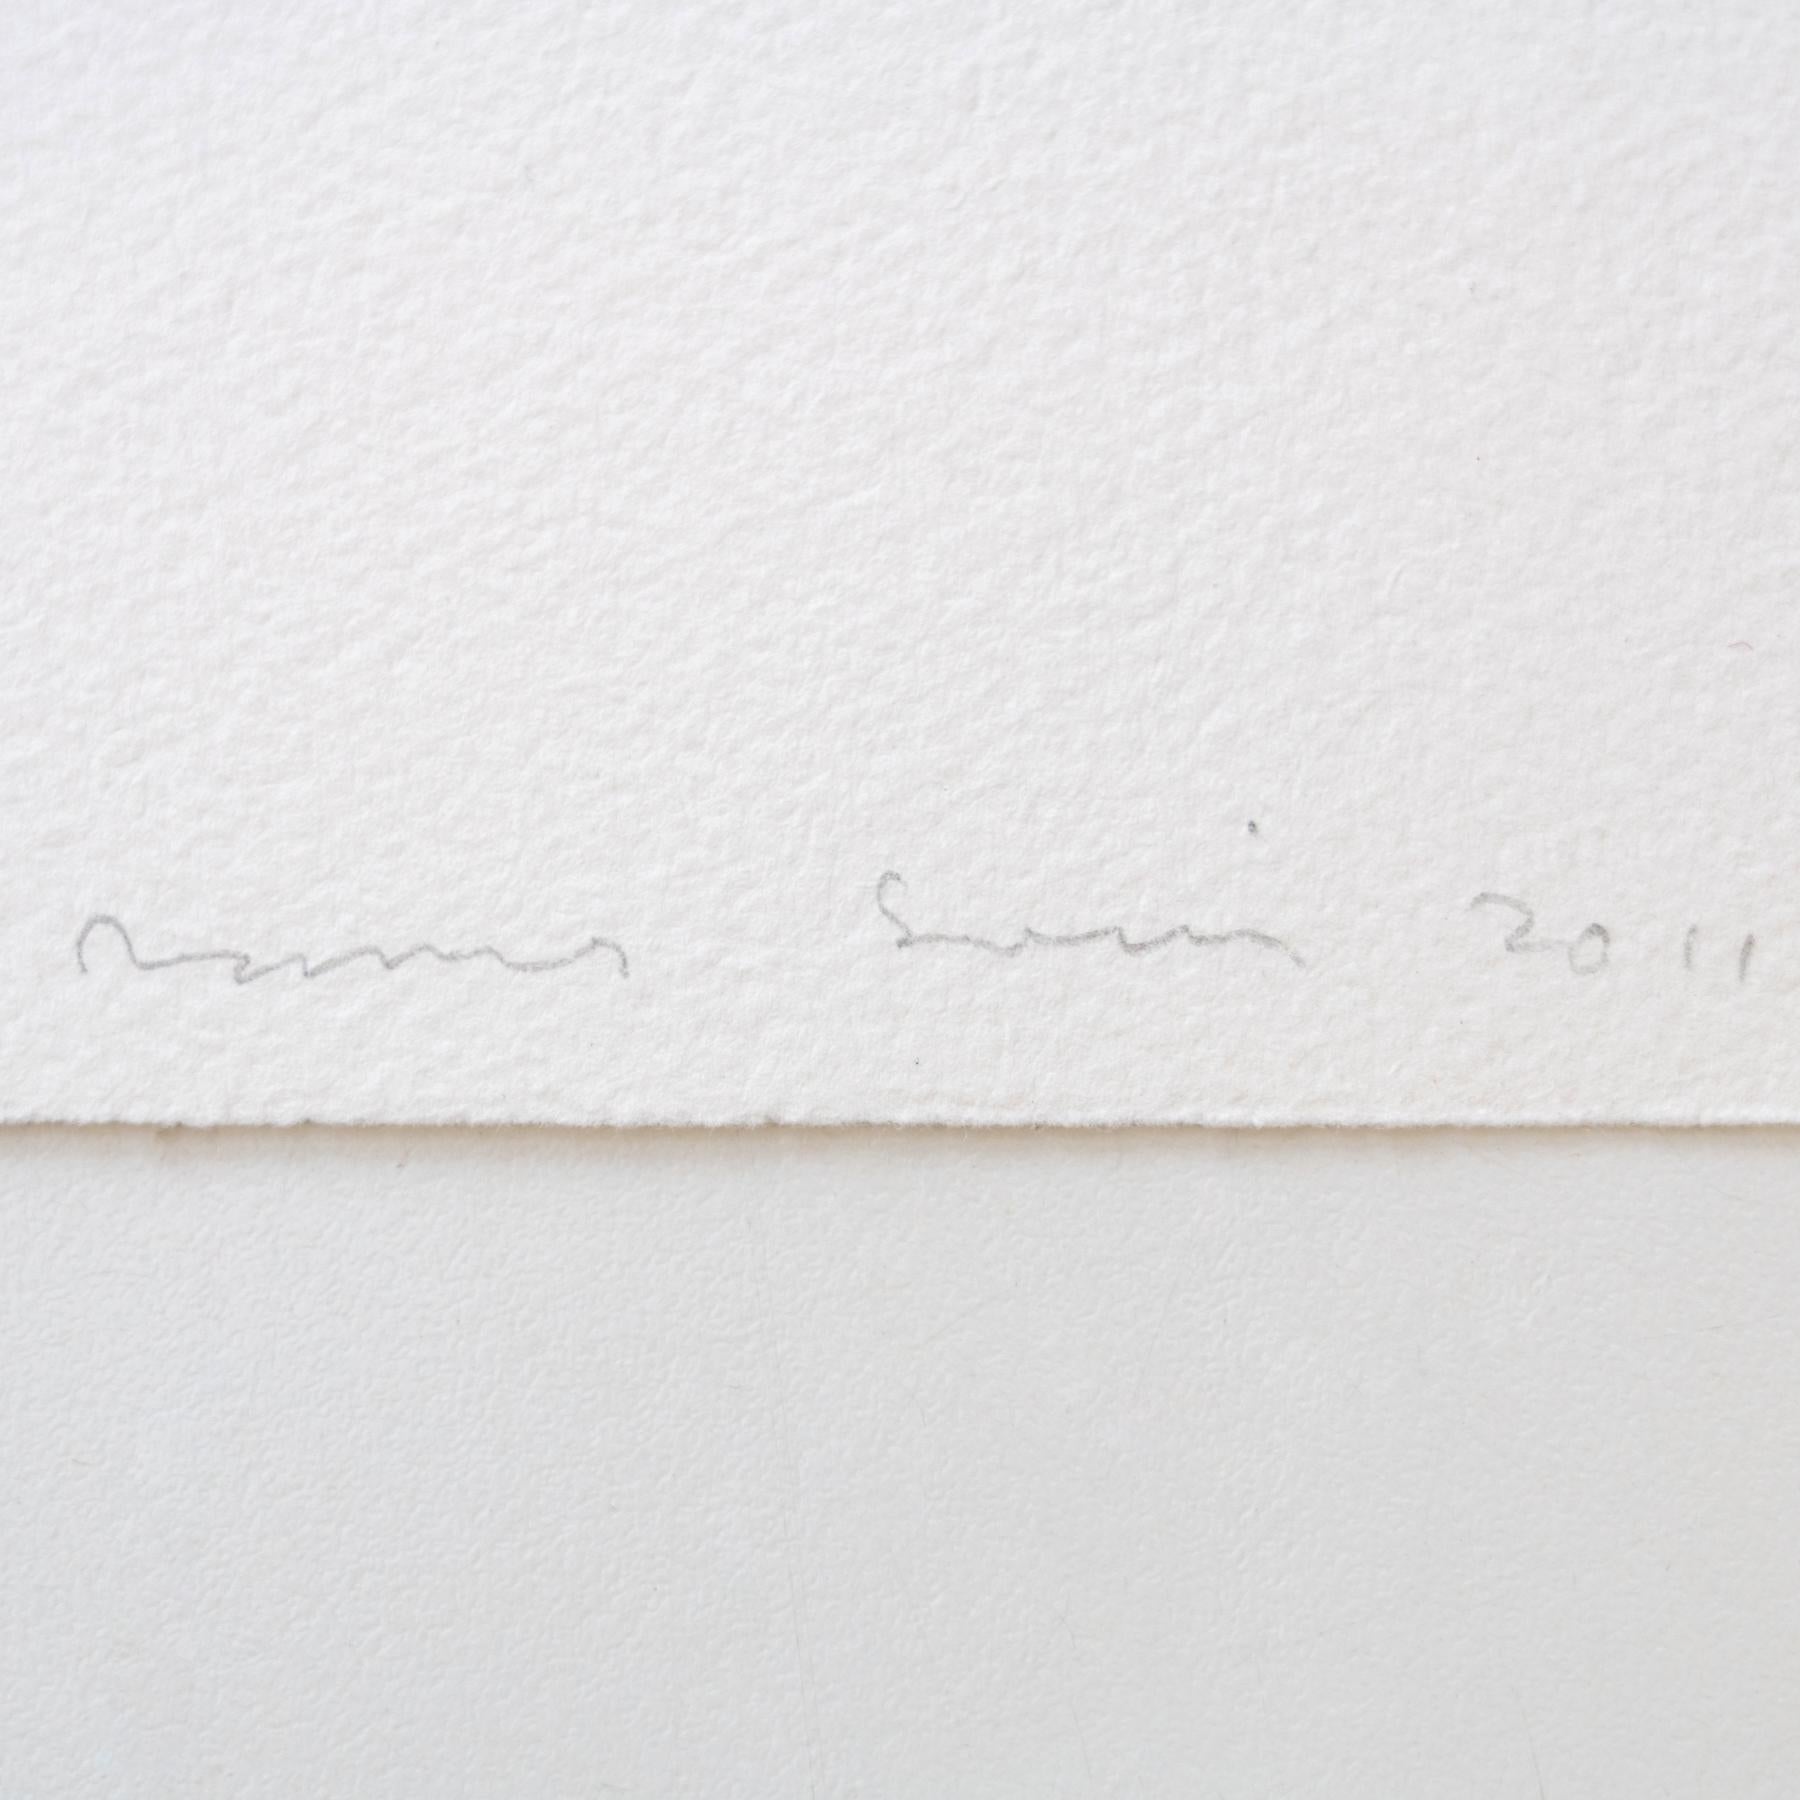 Contemporary James Siena Etching 'La Por', 2011 For Sale